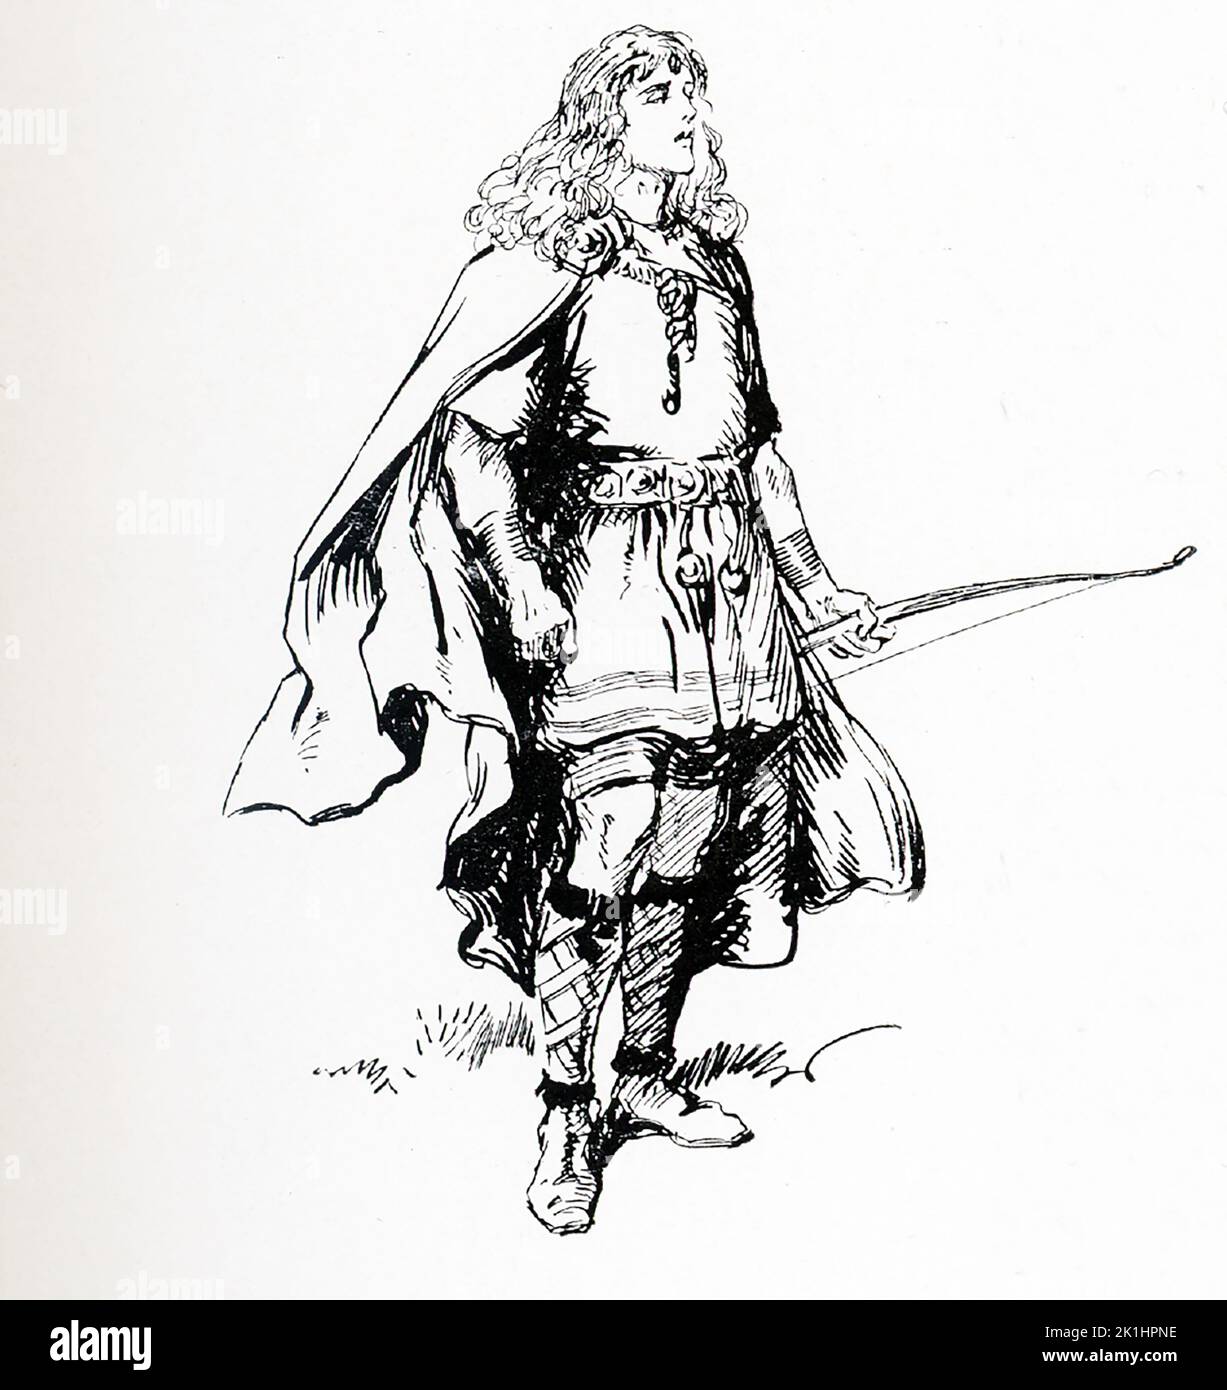 Selon la mythologie de la Norse, Balder (aussi Baldr et Baldur) est le dieu norse de la paix, de la lumière et du printemps. Fils du puissant Odin, il était aimé par l'Aesir, les dieux norses. Cette illustration de Gordon Browne date de 1913. Banque D'Images